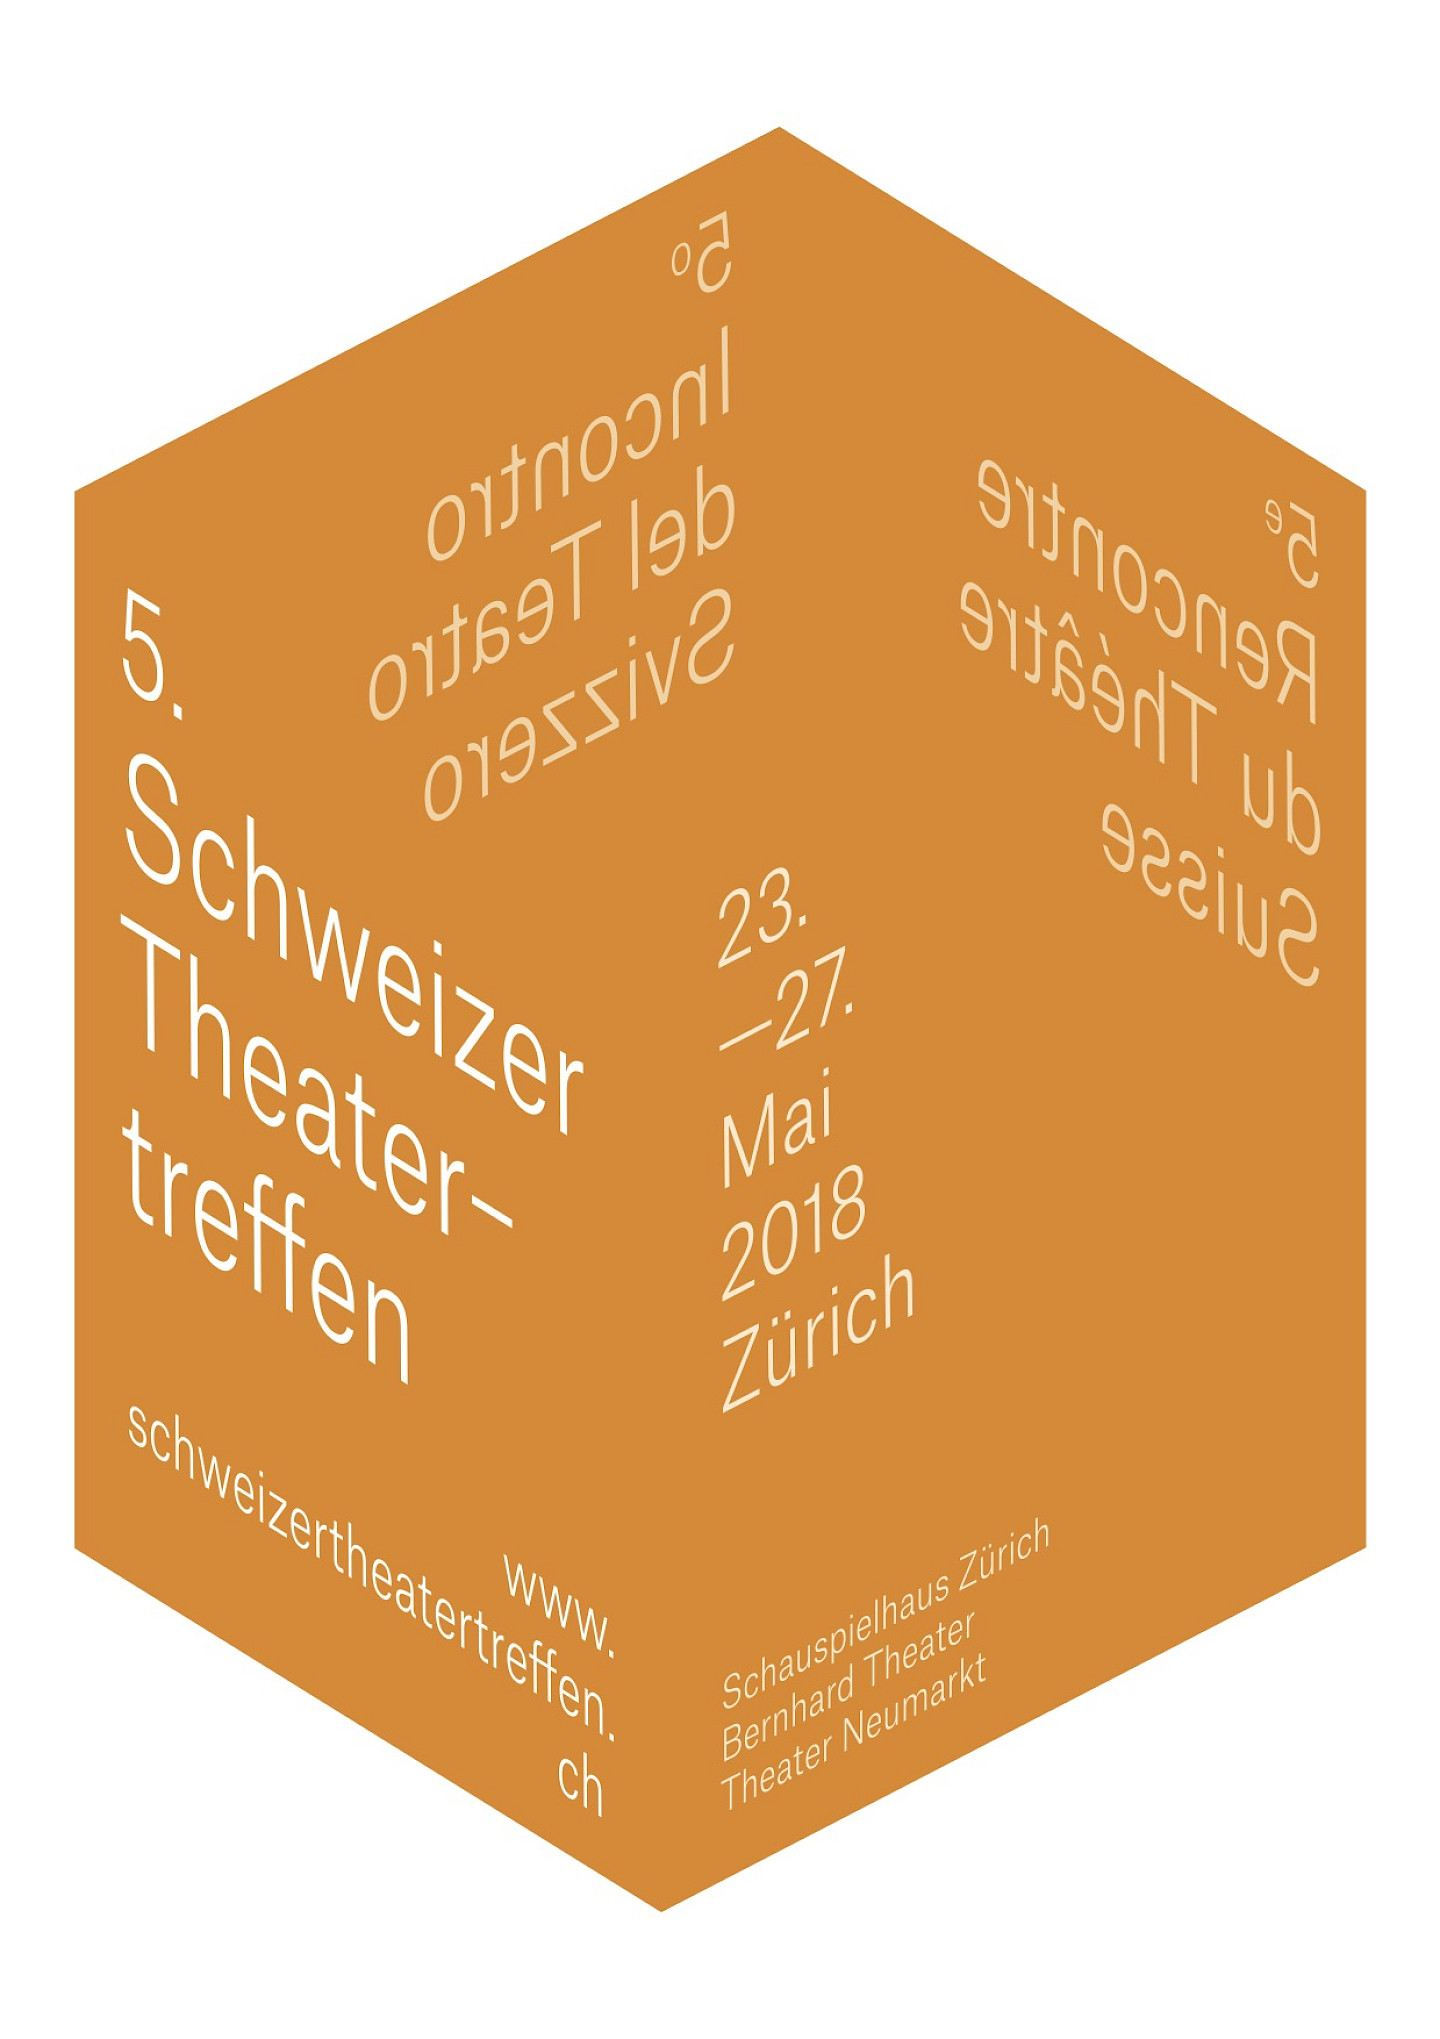 Schweizer Theater-<br>treffen